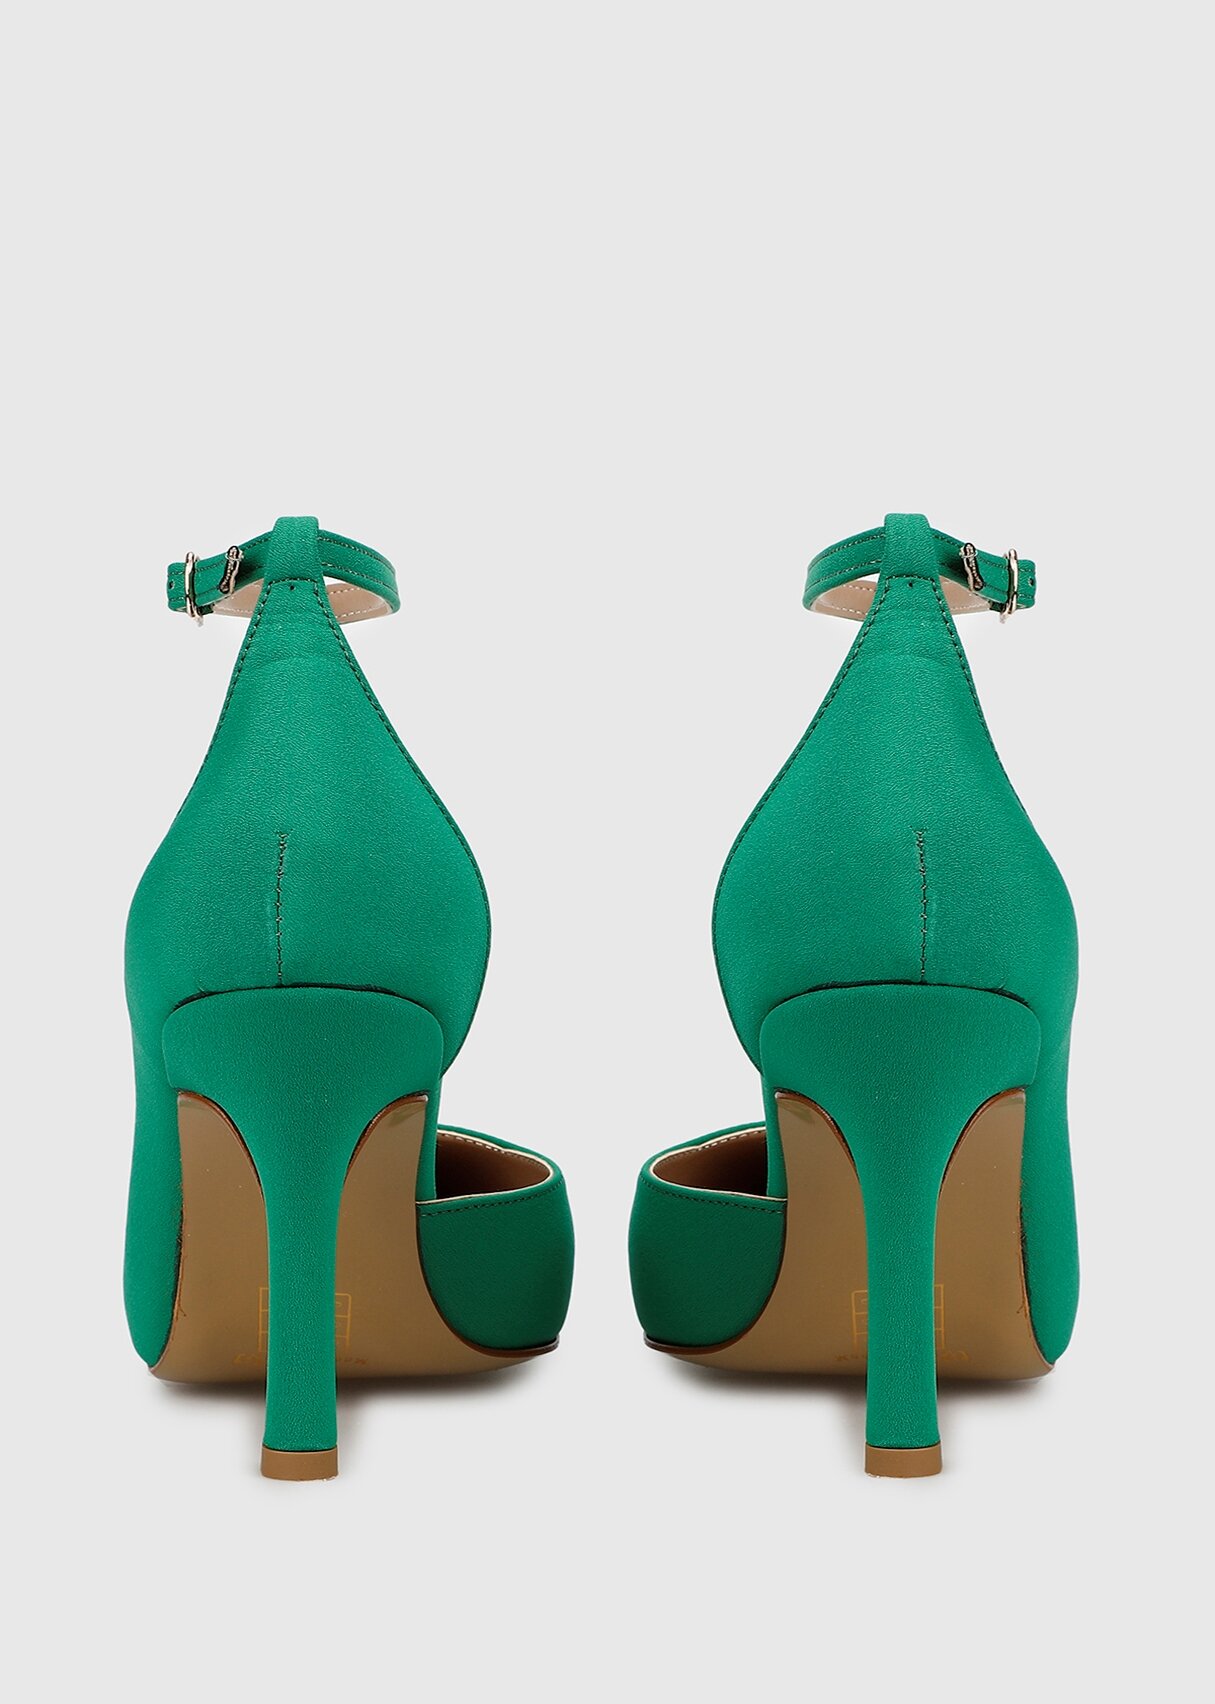 Provoq Yeşil Kadın Ayakkabı